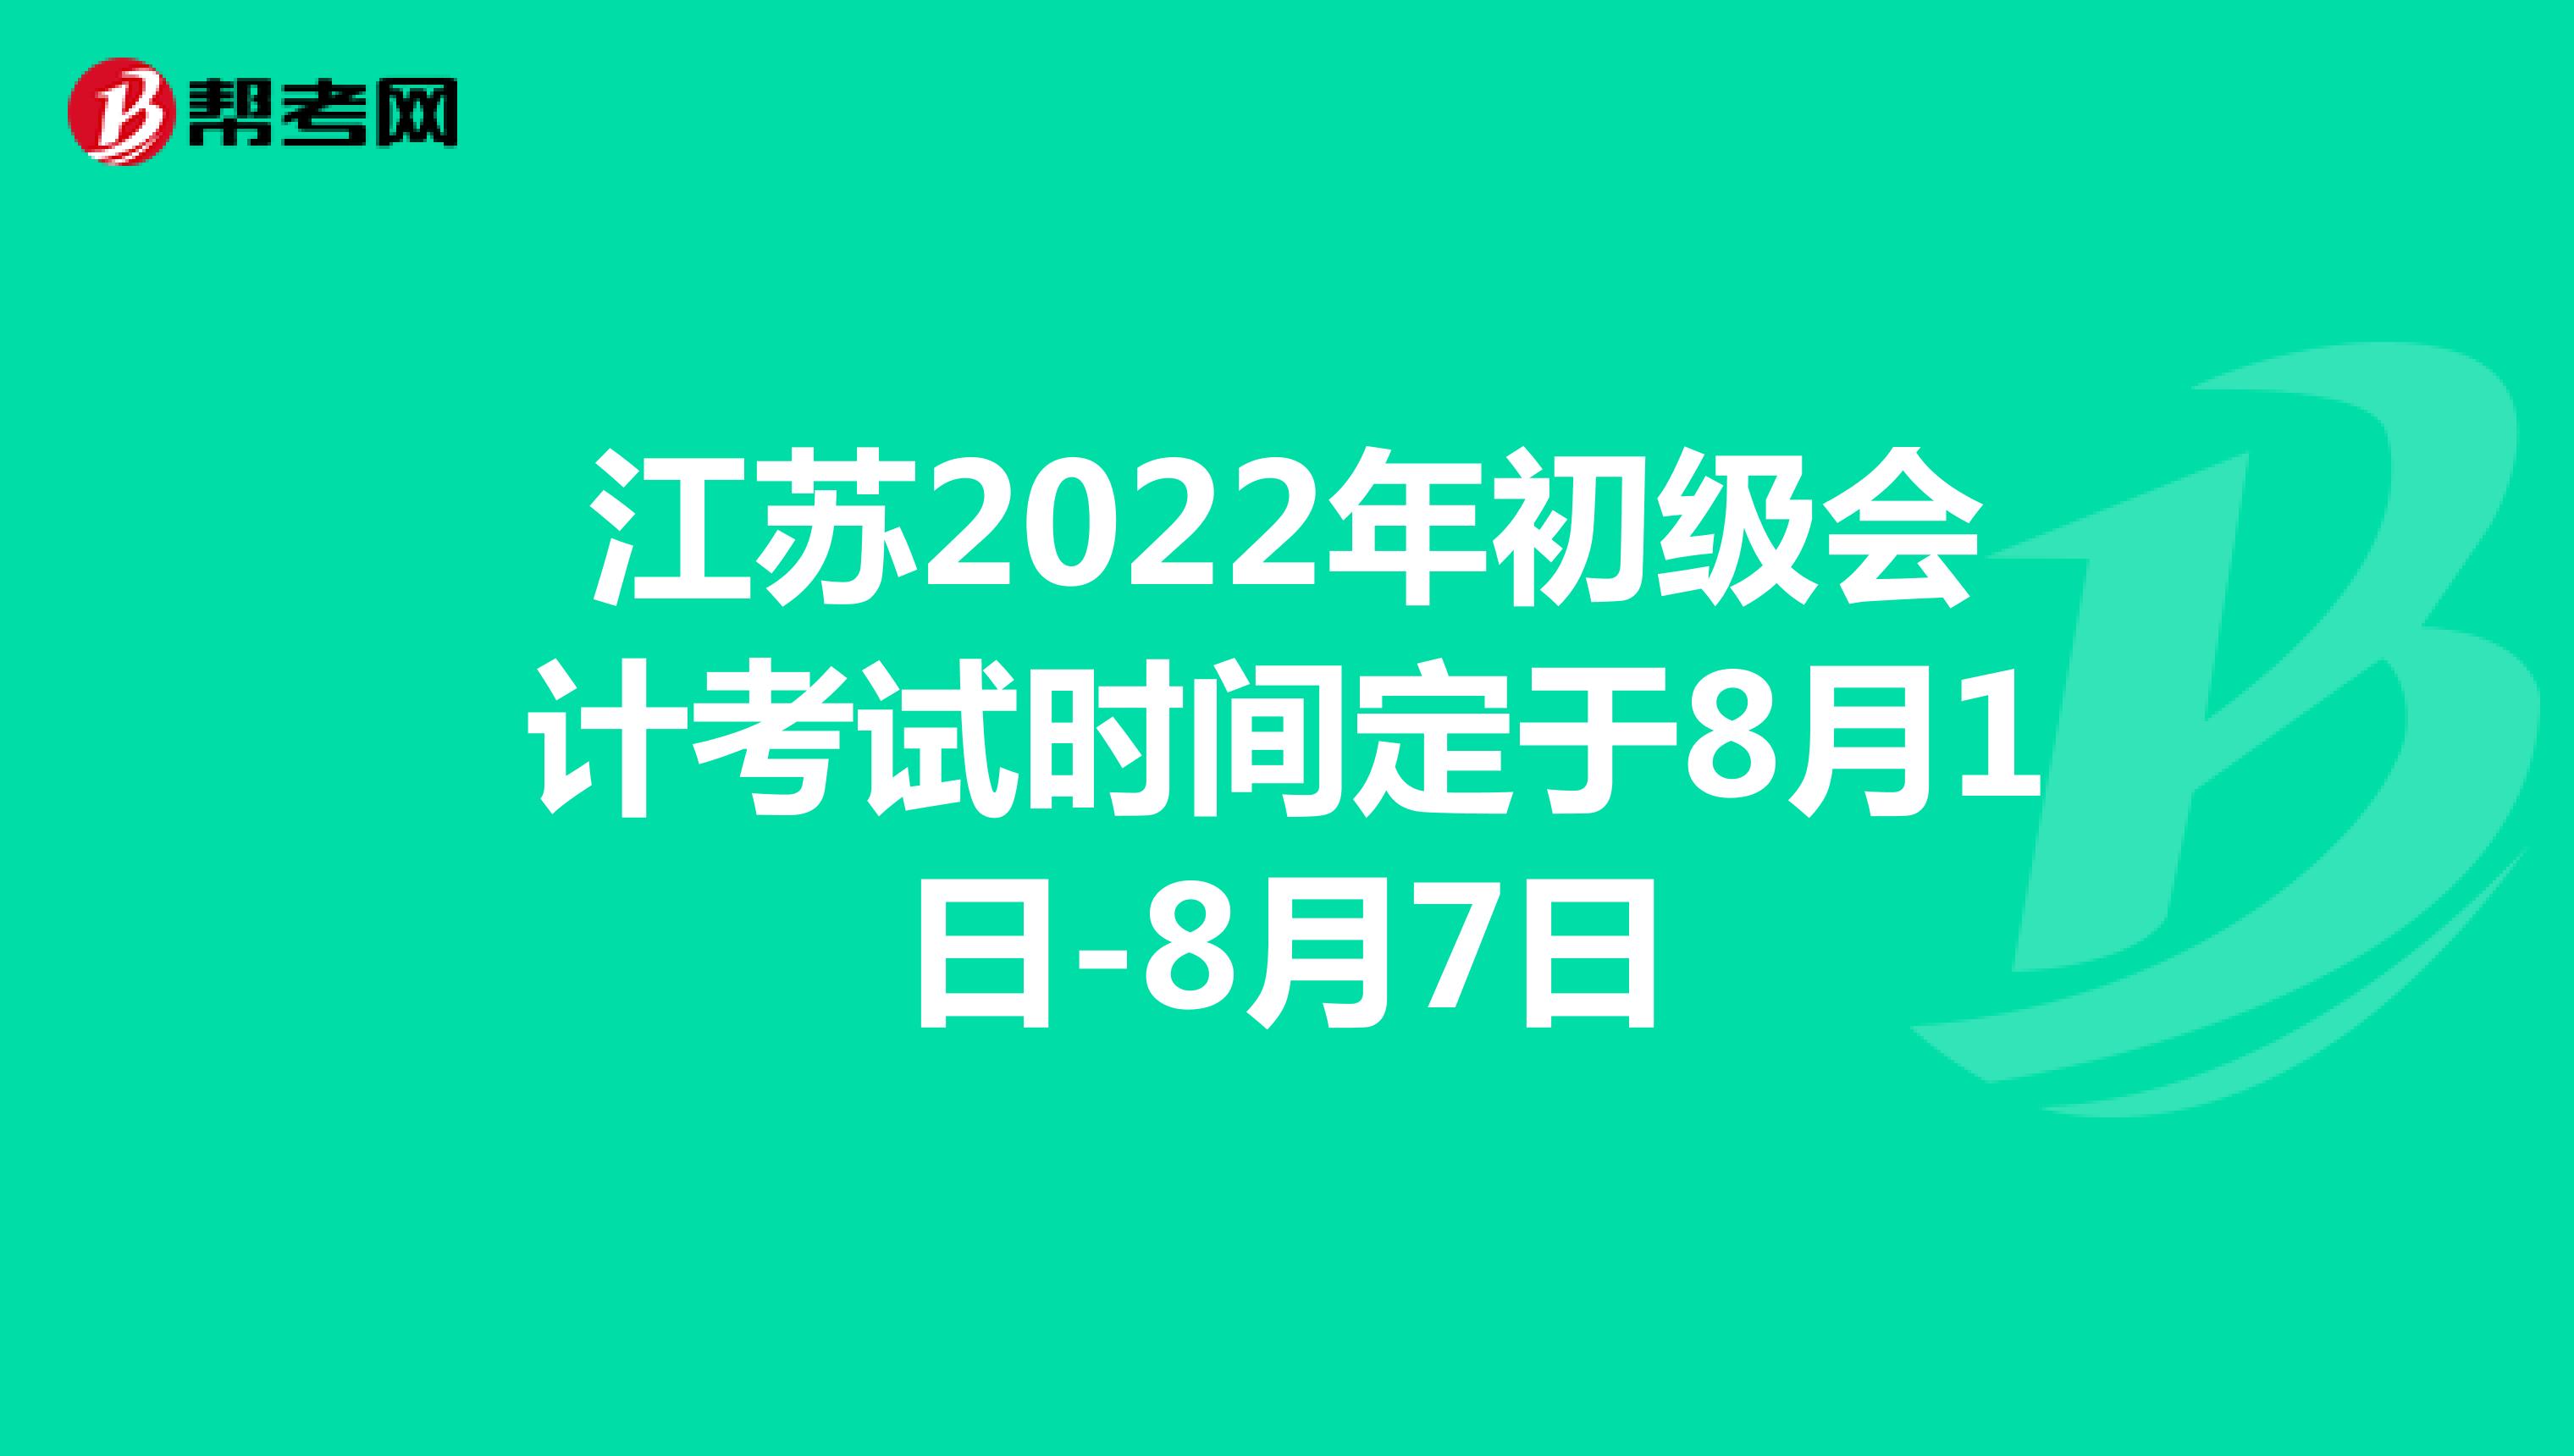 江苏2022年初级会计考试时间定于8月1日-8月7日